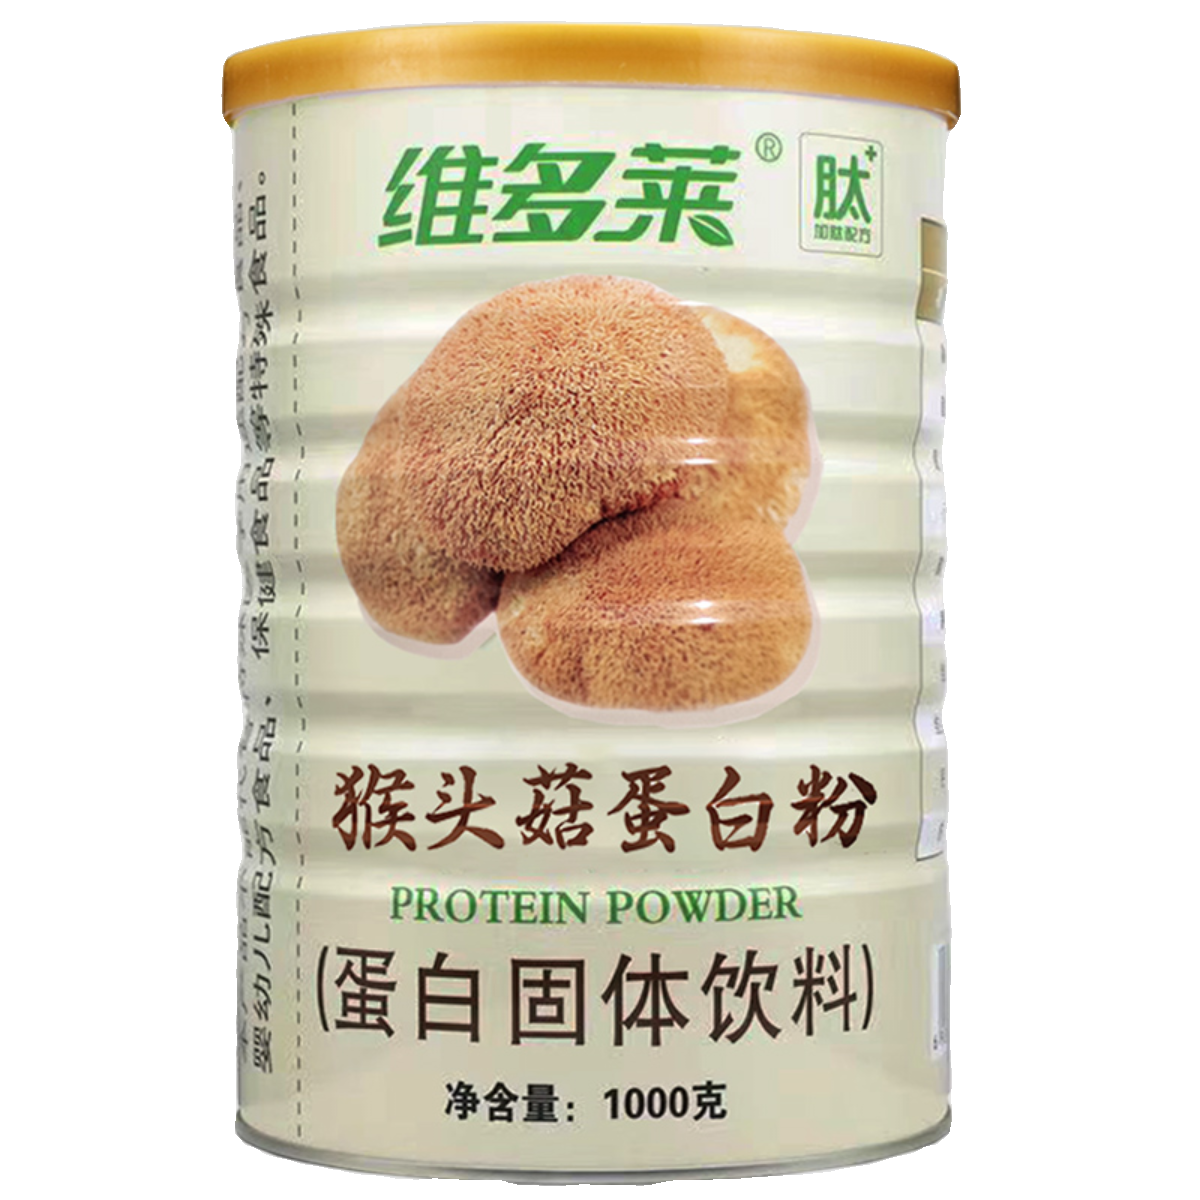 维多莱猴头菇蛋白粉1000g乳清大豆蛋白质肽铁高钙增强营养品免疫